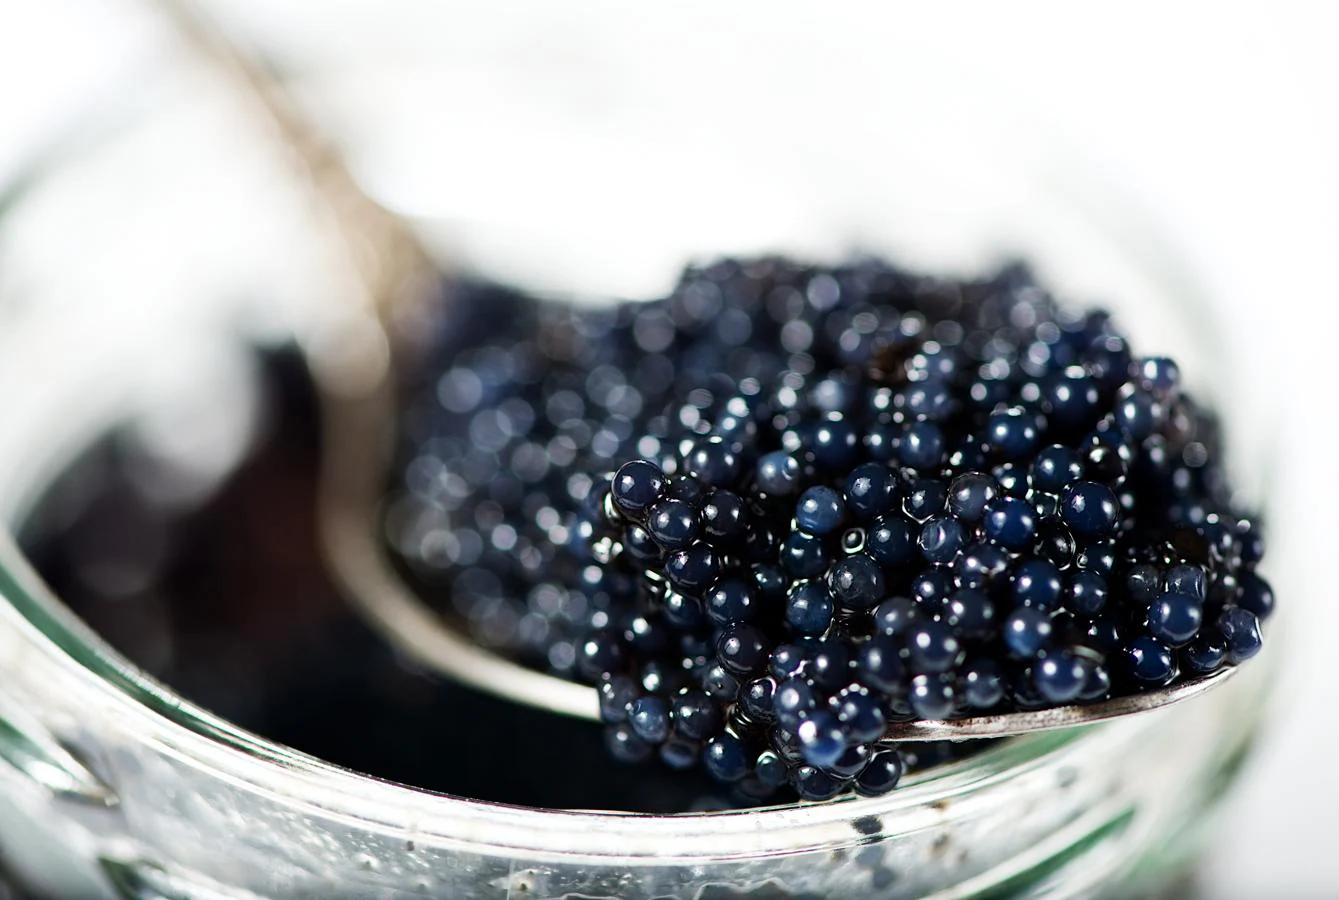 Caviar. Otra delicatessen más a nuestra lista. El caviar cuenta con 35.1 microgramos de vitamina D por cada 100 gramos, según la Bedca. Aunque nos encontramos ante un alimento muchas veces poco accesible, en ocasiones especiales puede servirse en canapés, o tomarlo solo disfrutar, muy despacio, de su único y peculiar sabor.